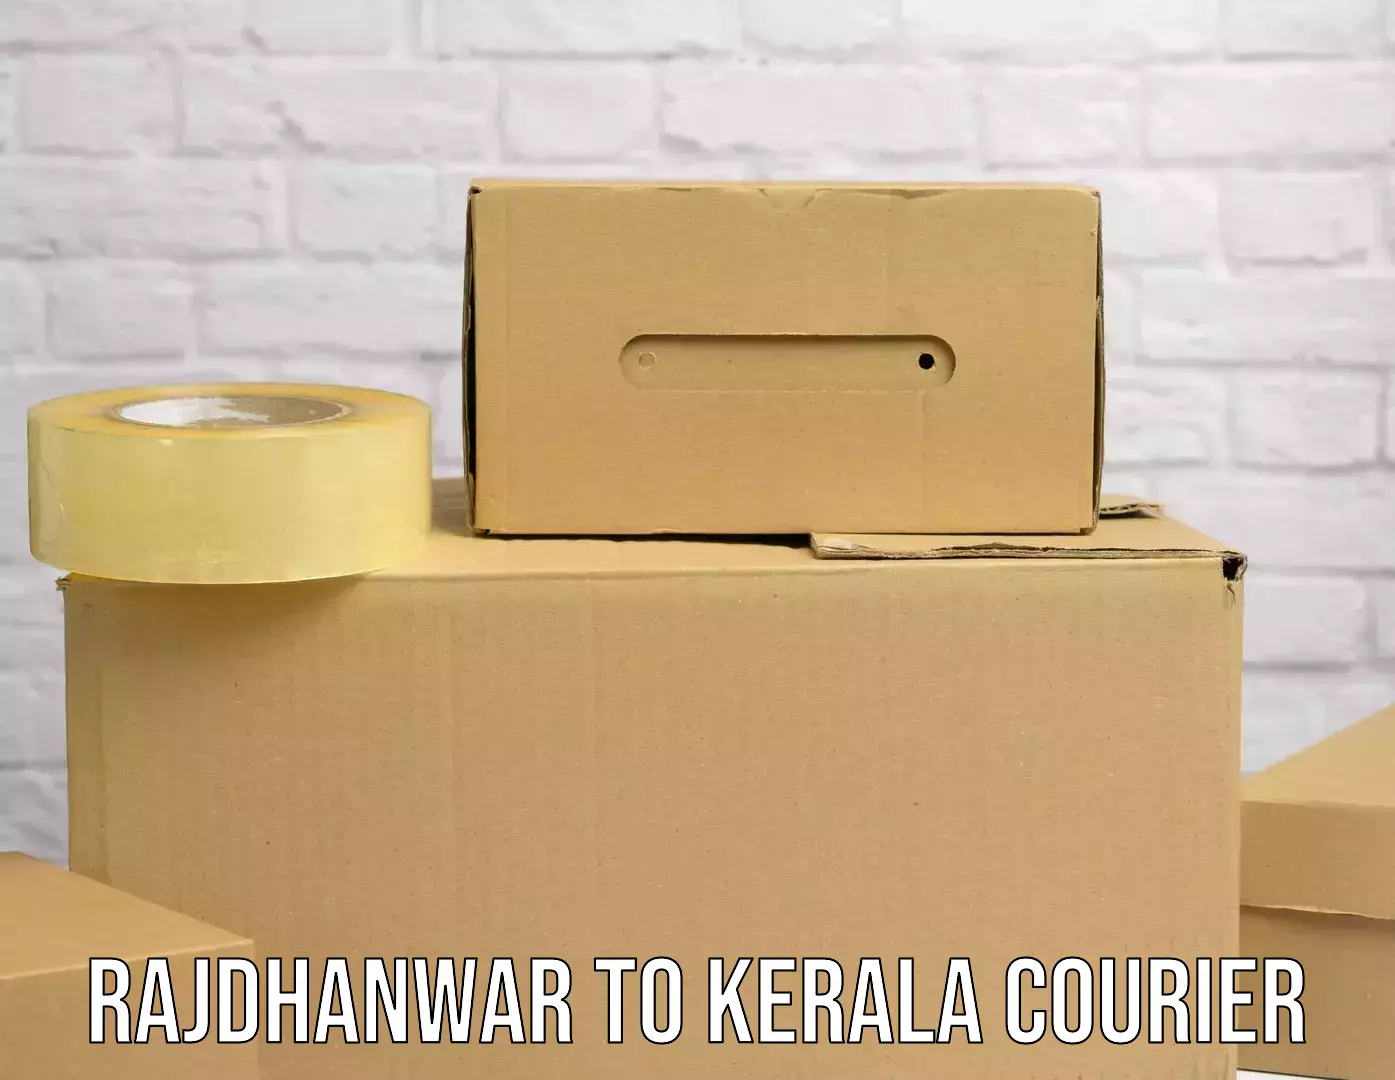 Efficient cargo handling Rajdhanwar to Kozhencherry